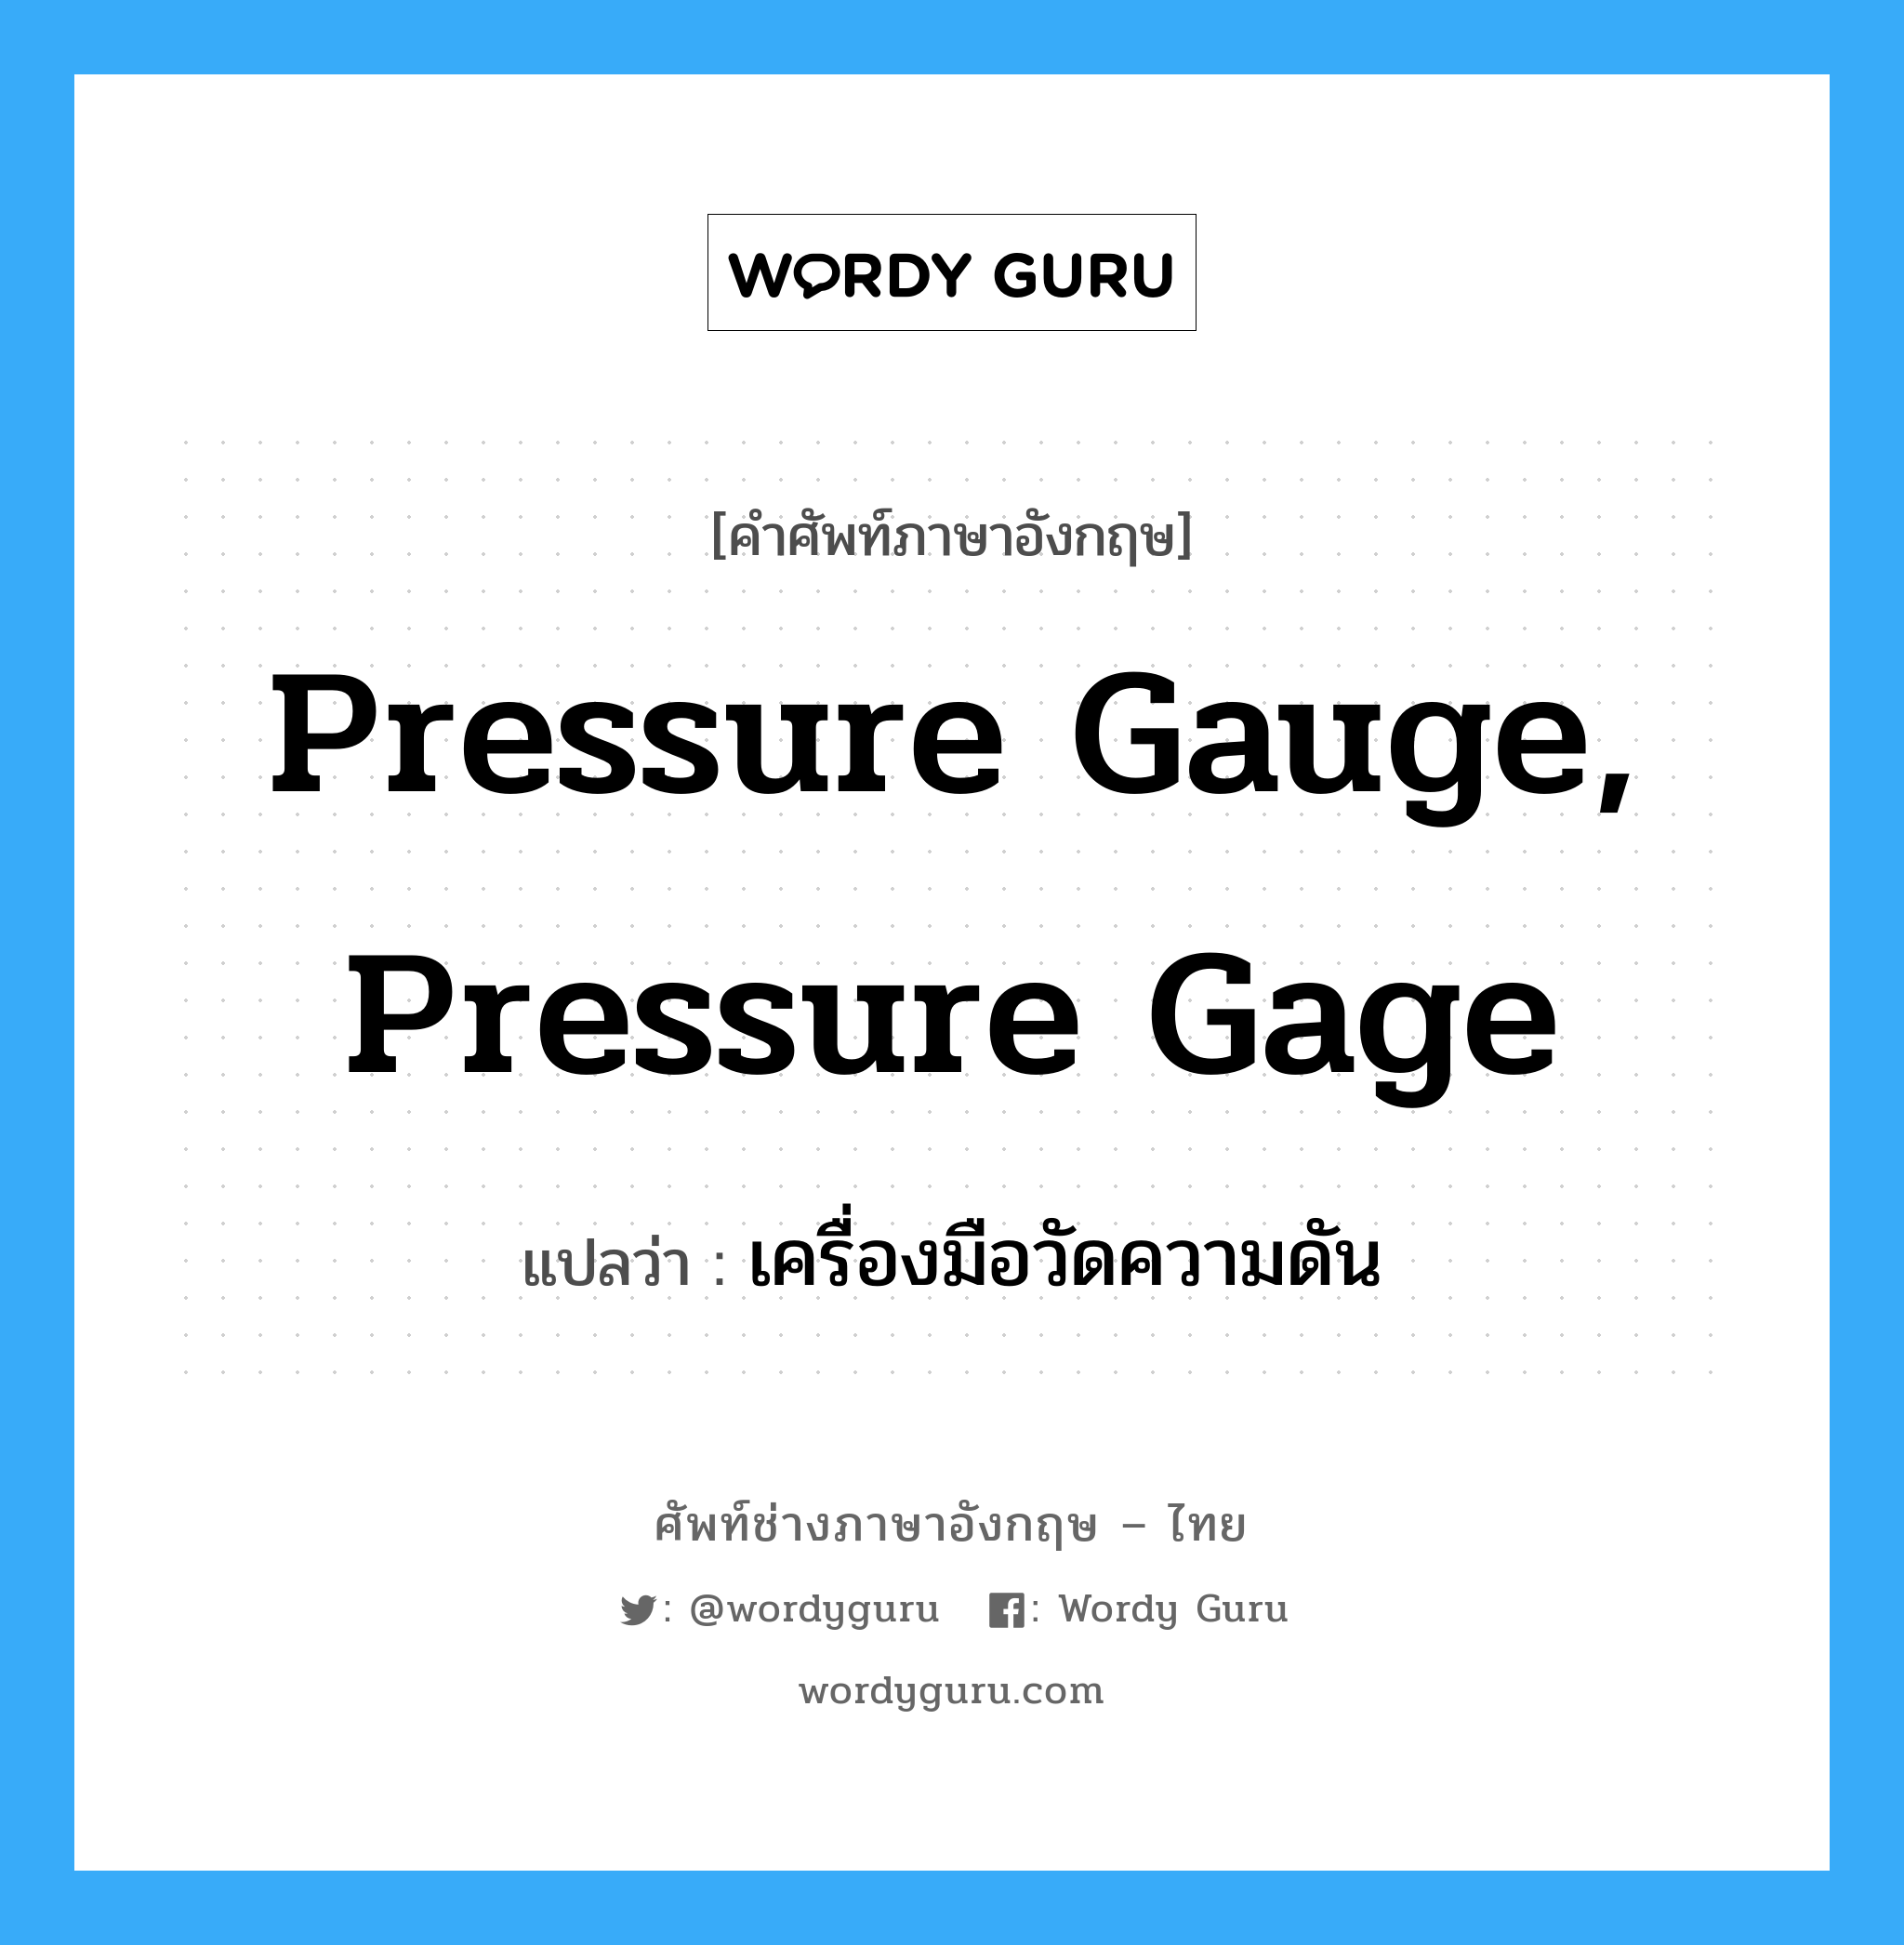 เครื่องมือวัดความดัน ภาษาอังกฤษ?, คำศัพท์ช่างภาษาอังกฤษ - ไทย เครื่องมือวัดความดัน คำศัพท์ภาษาอังกฤษ เครื่องมือวัดความดัน แปลว่า pressure gauge, pressure gage